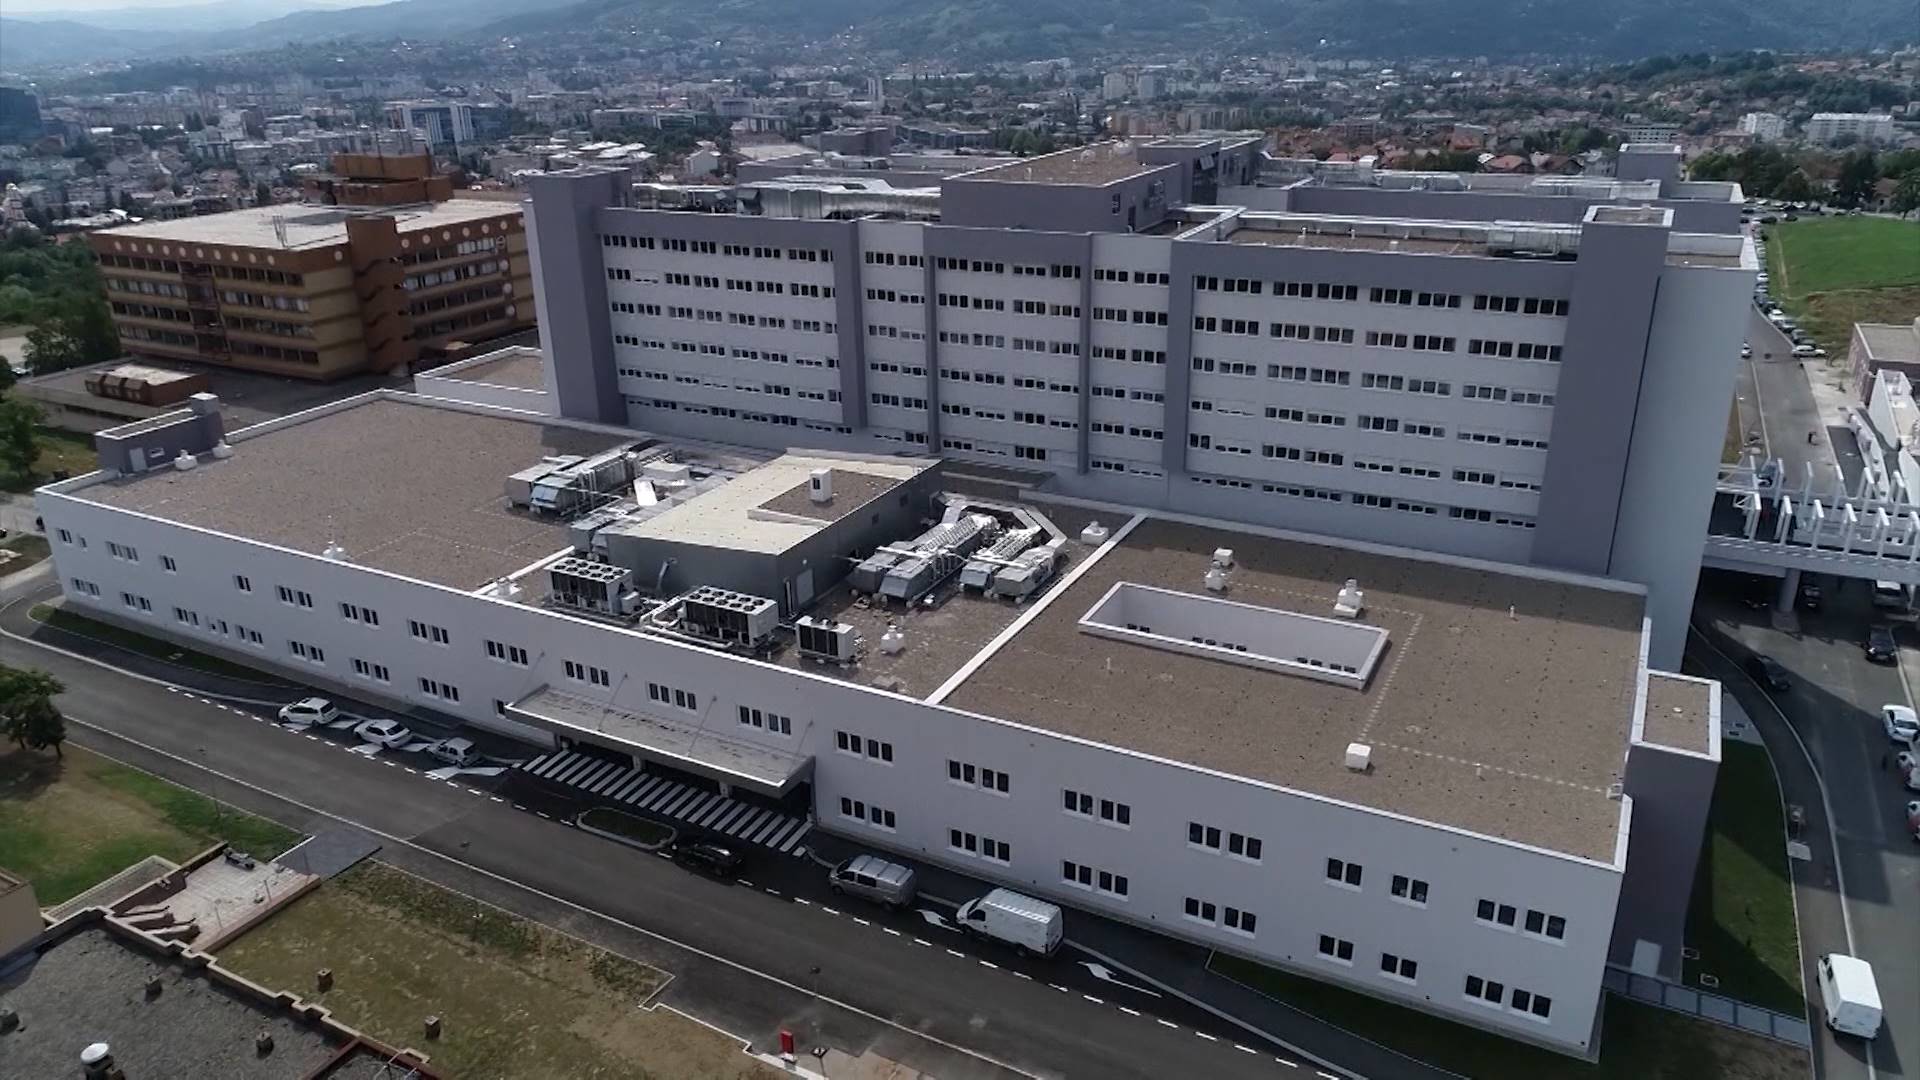 ukc republike srpske zbog krsenja prava radnika tuzilo 66 anesteziologa